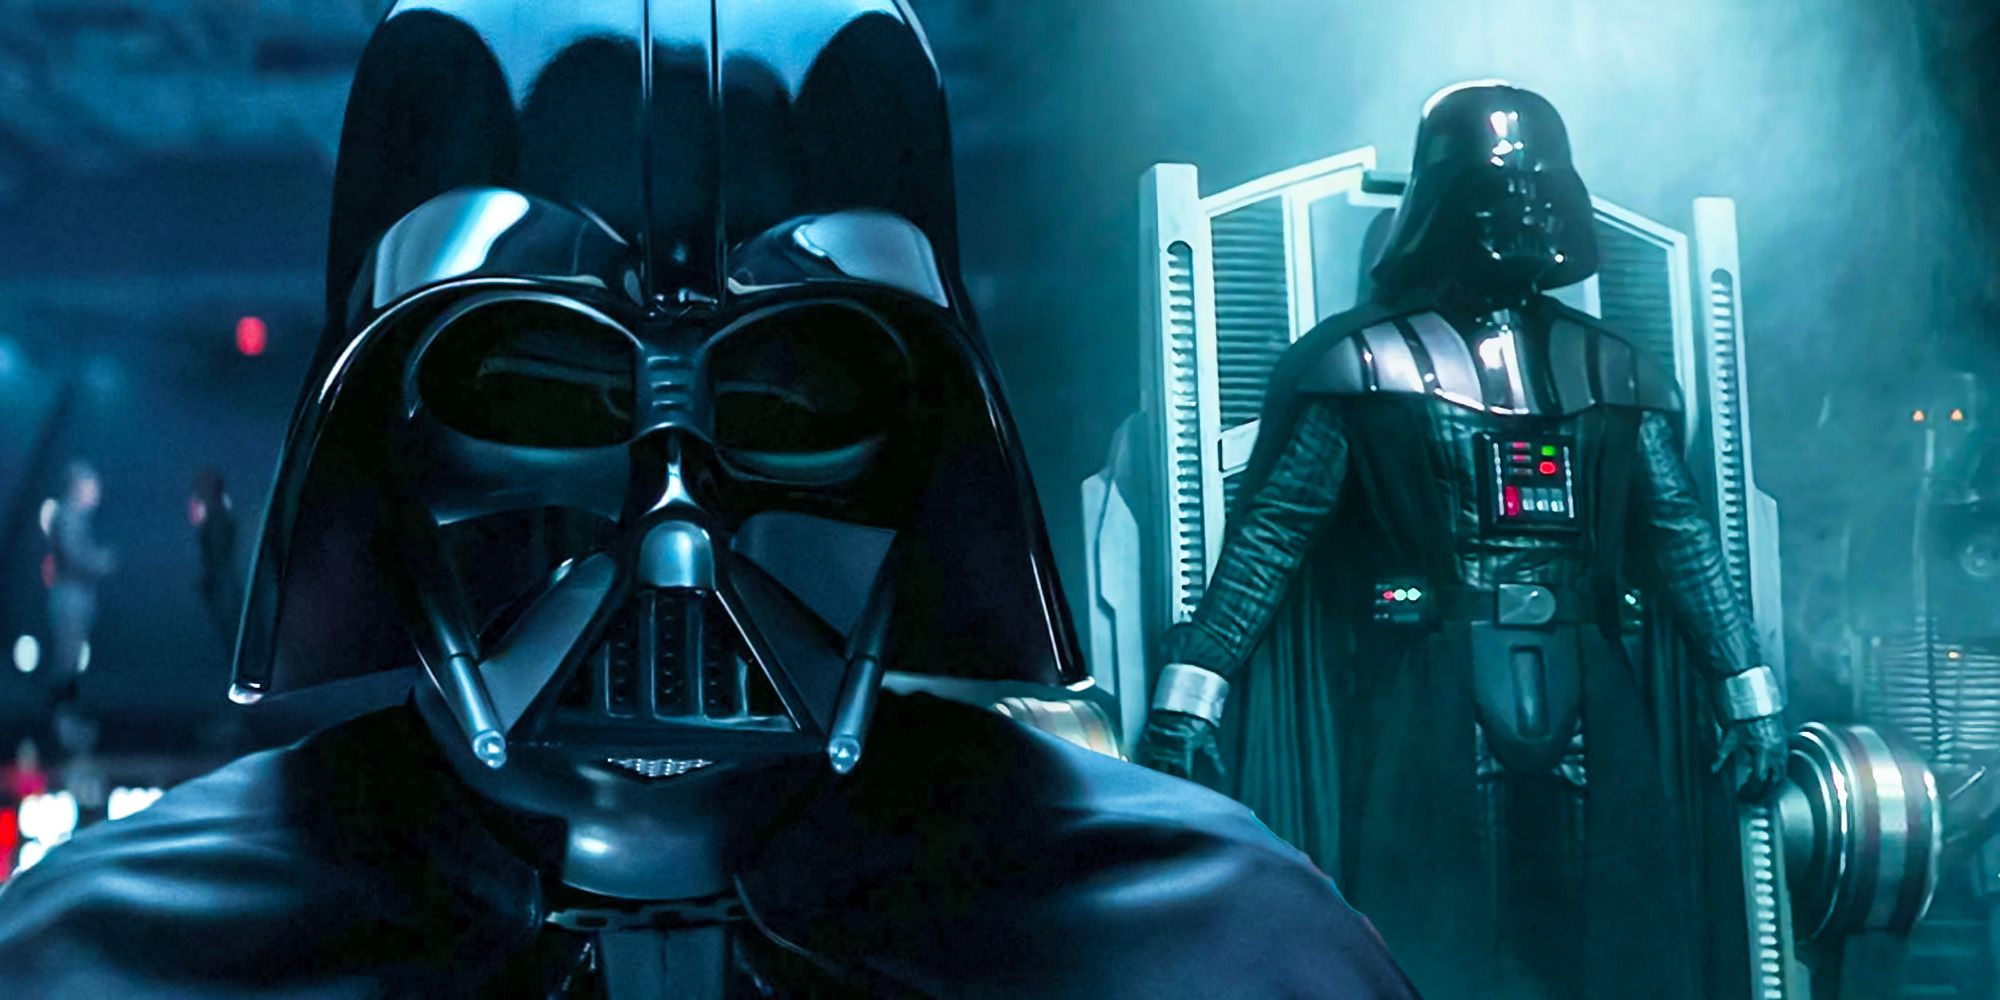 ¿Cuántos trajes tenía Darth Vader?